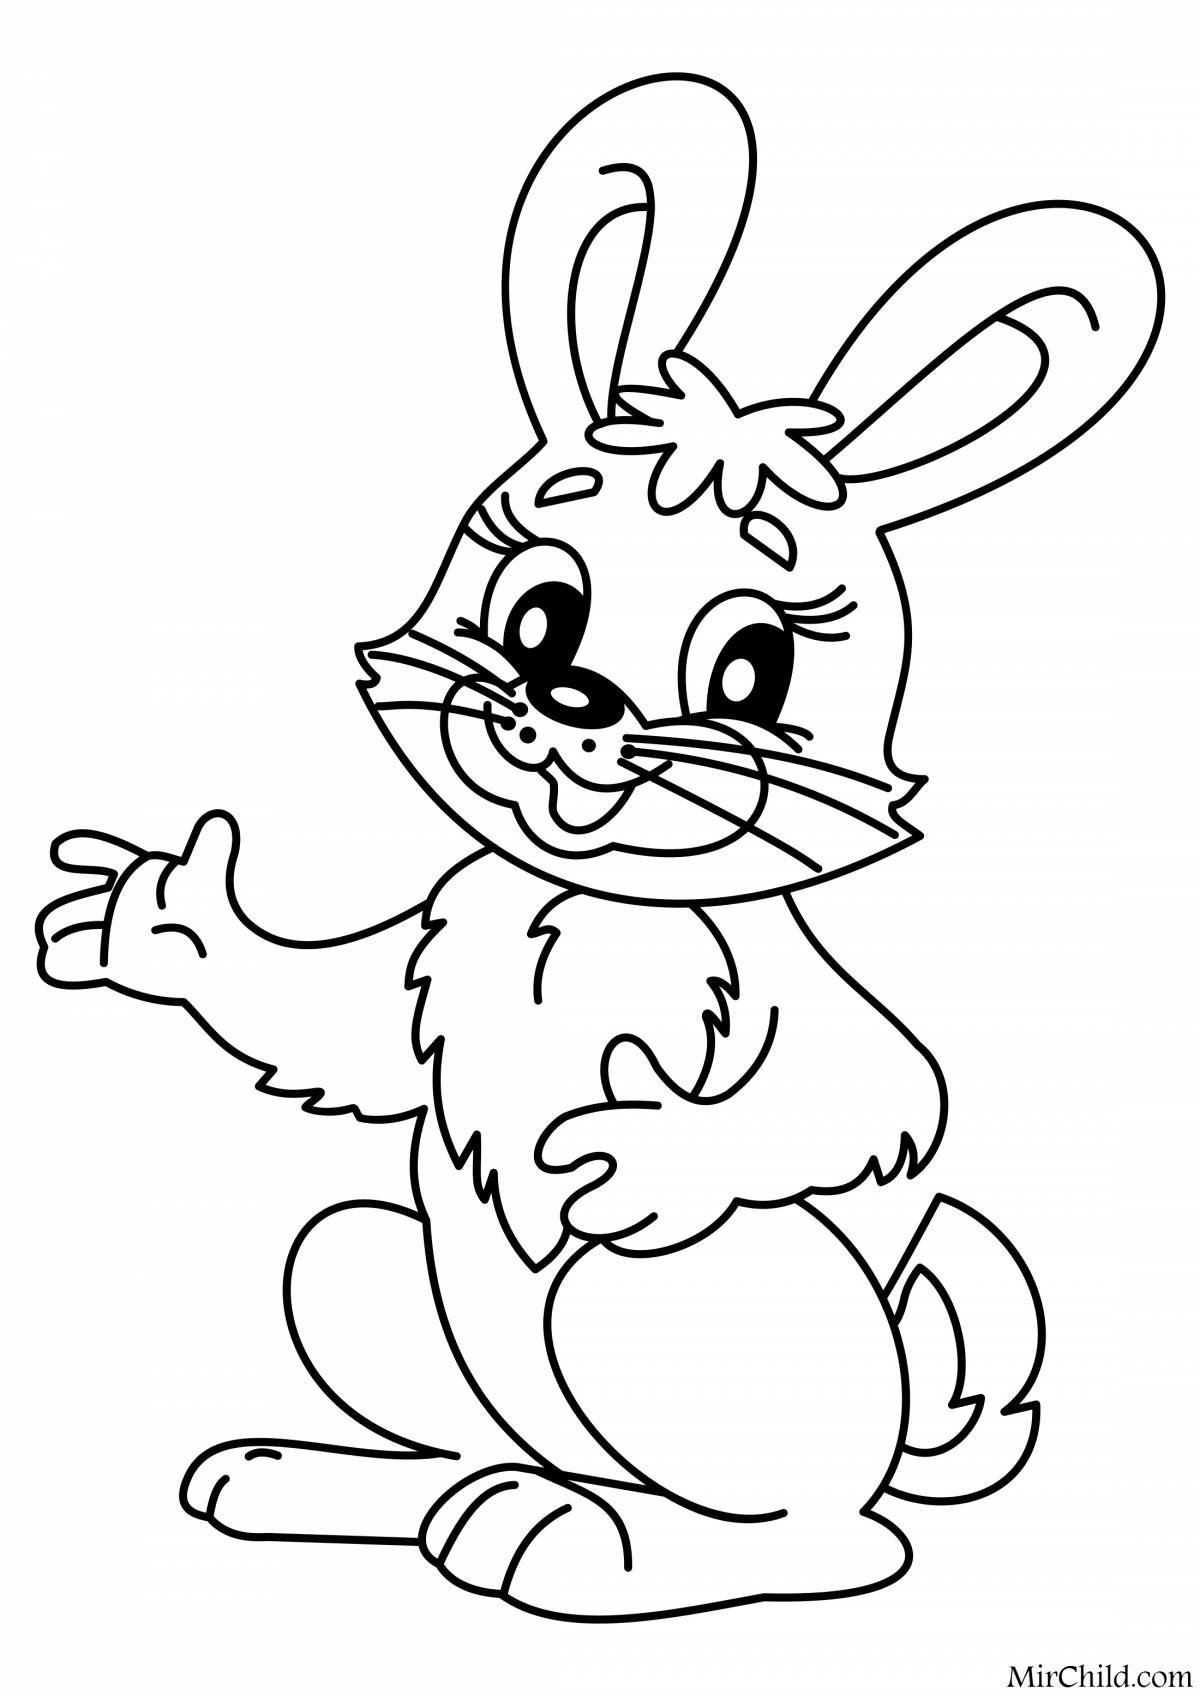 Забавный кролик-раскраска для детей